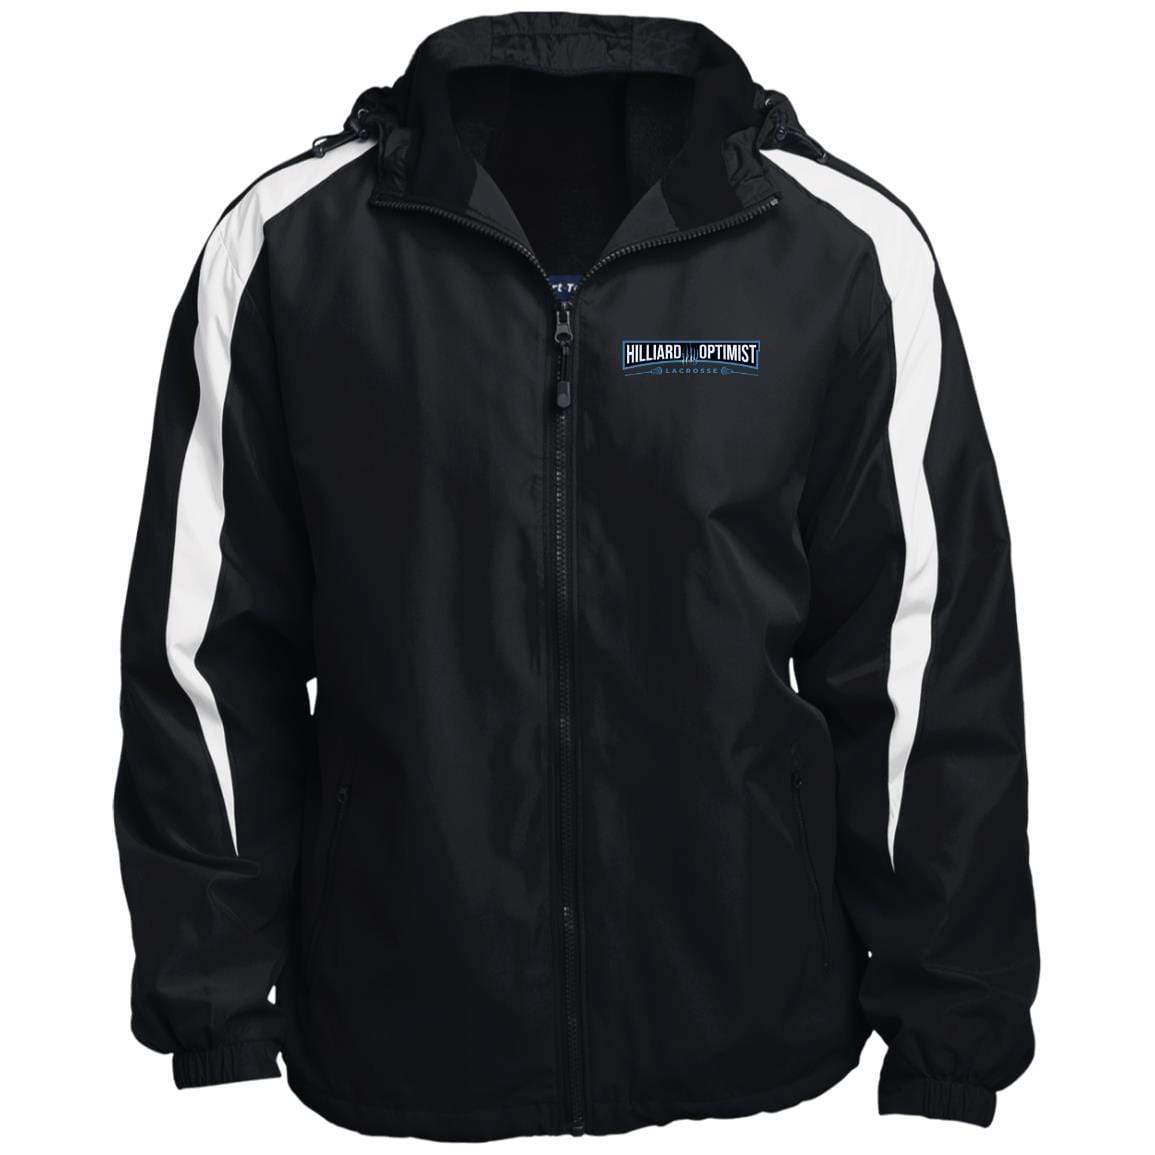 Hilliard Optimist Lacrosse Fleece Lined Hooded Premium Jacket Signature Lacrosse